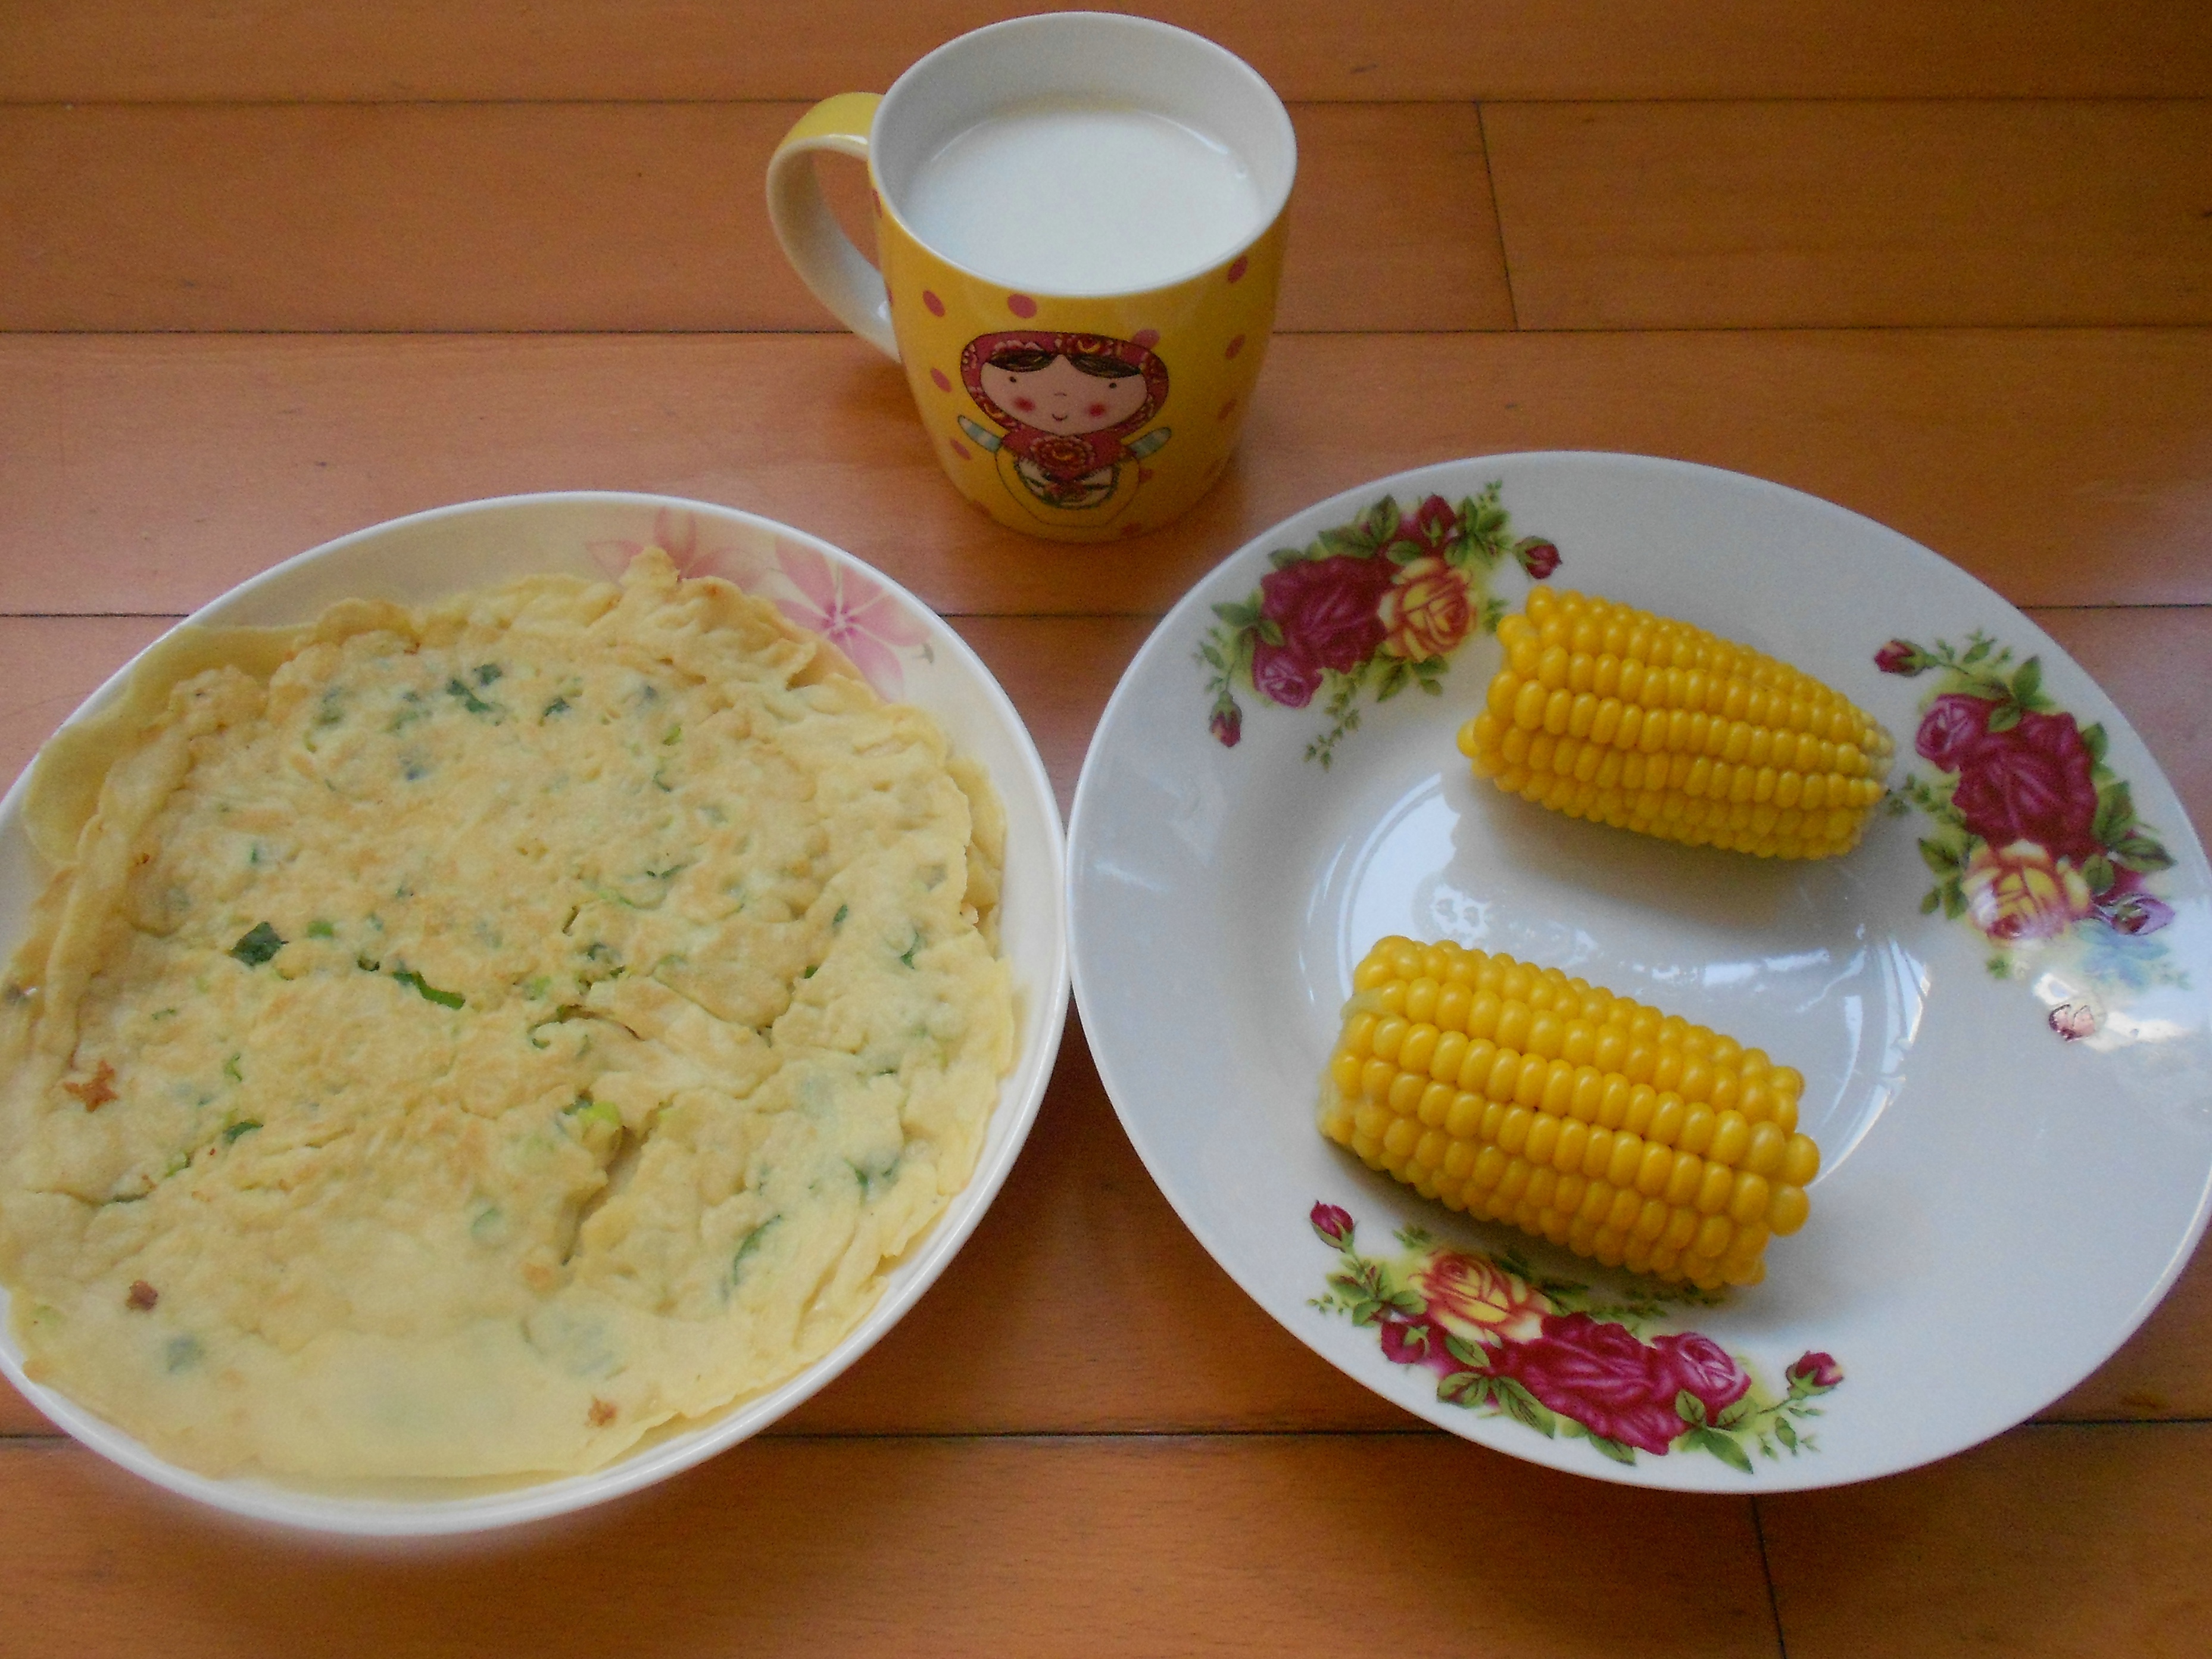 【早餐记录】鸡蛋煎饼 煮玉米 牛奶,5月7号简单营养早餐,鸡蛋煎饼和煮